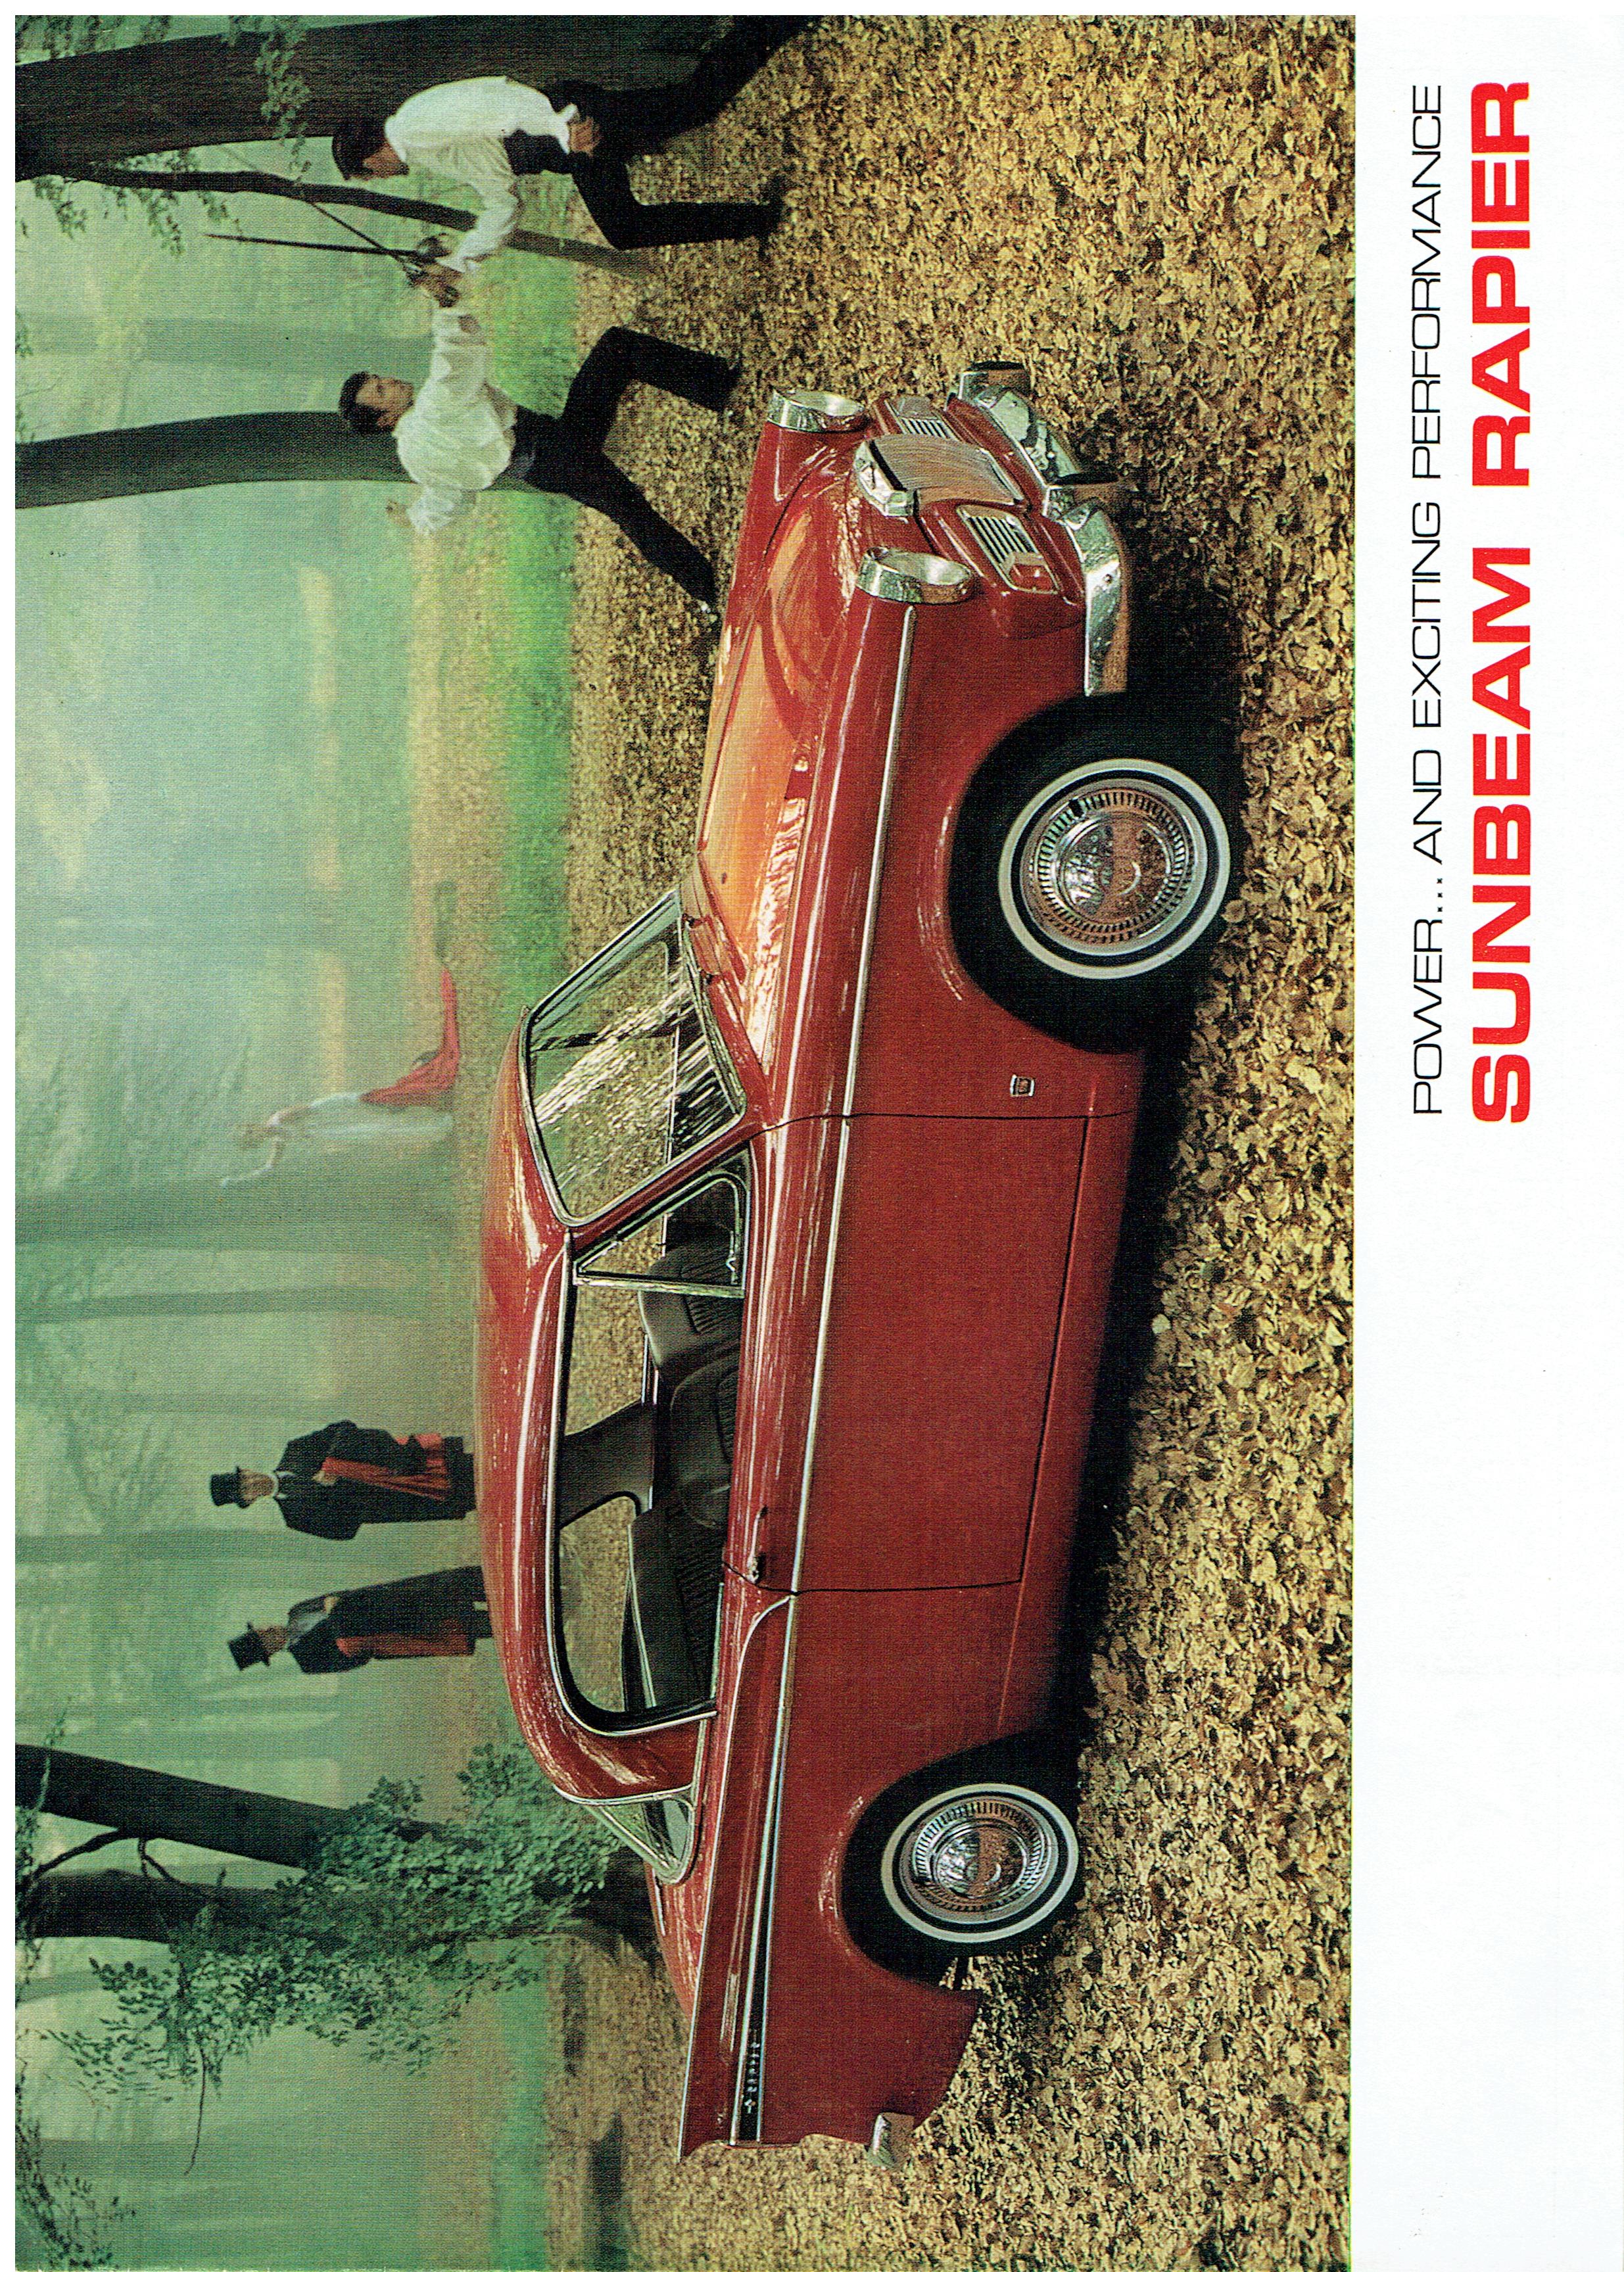 1967 Sunbeam Rapier (1) 293mm x 210mm.jpg-2023-5-29 16.1.20